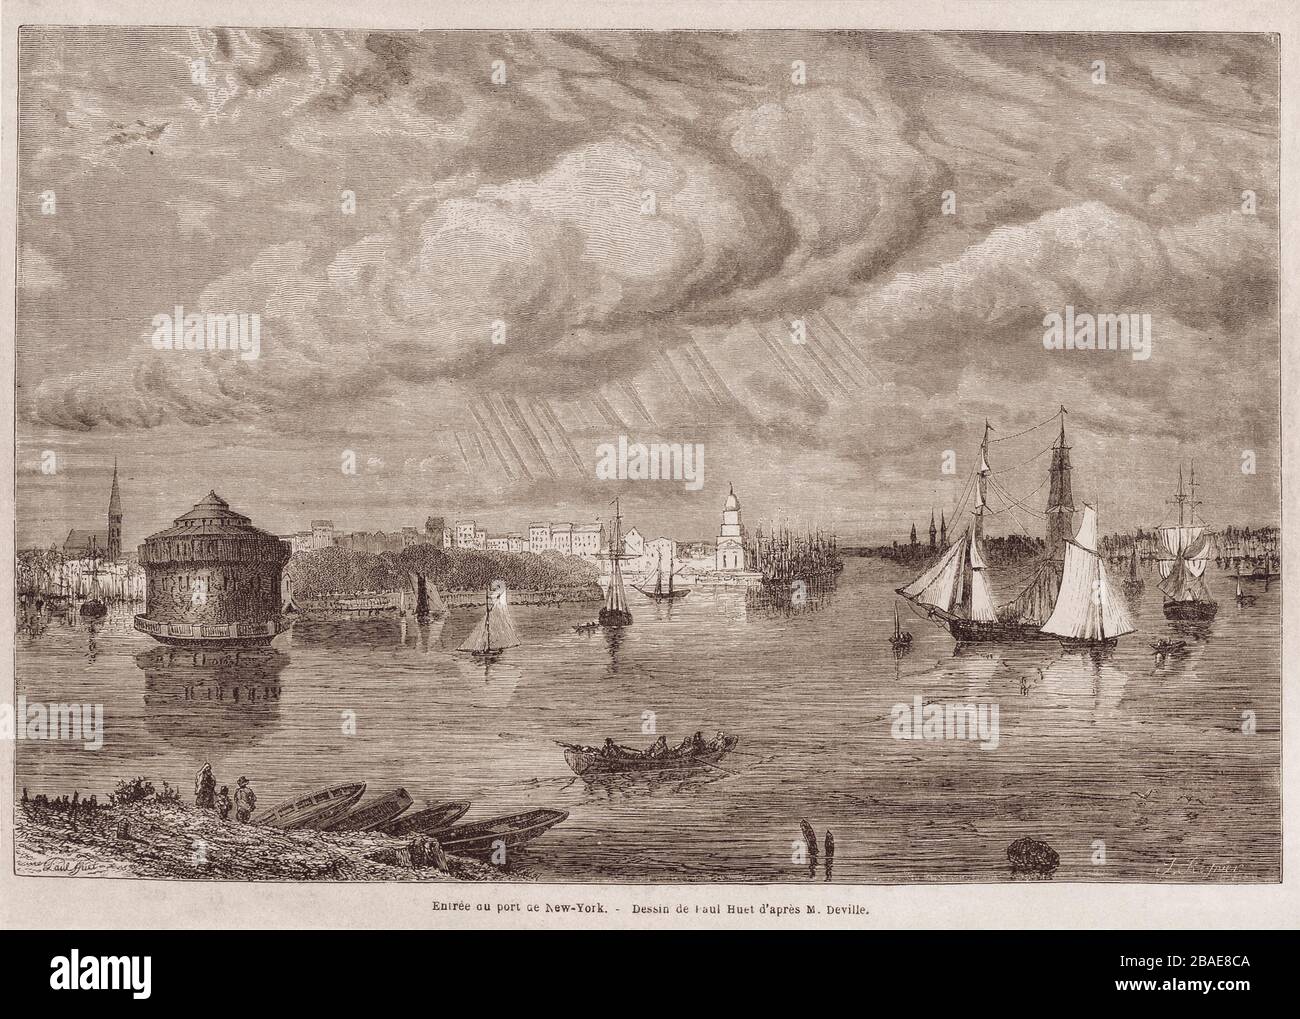 Gravure de l'entrée du port maritime de New York. Par Huet après Deville. xixe siècle Banque D'Images